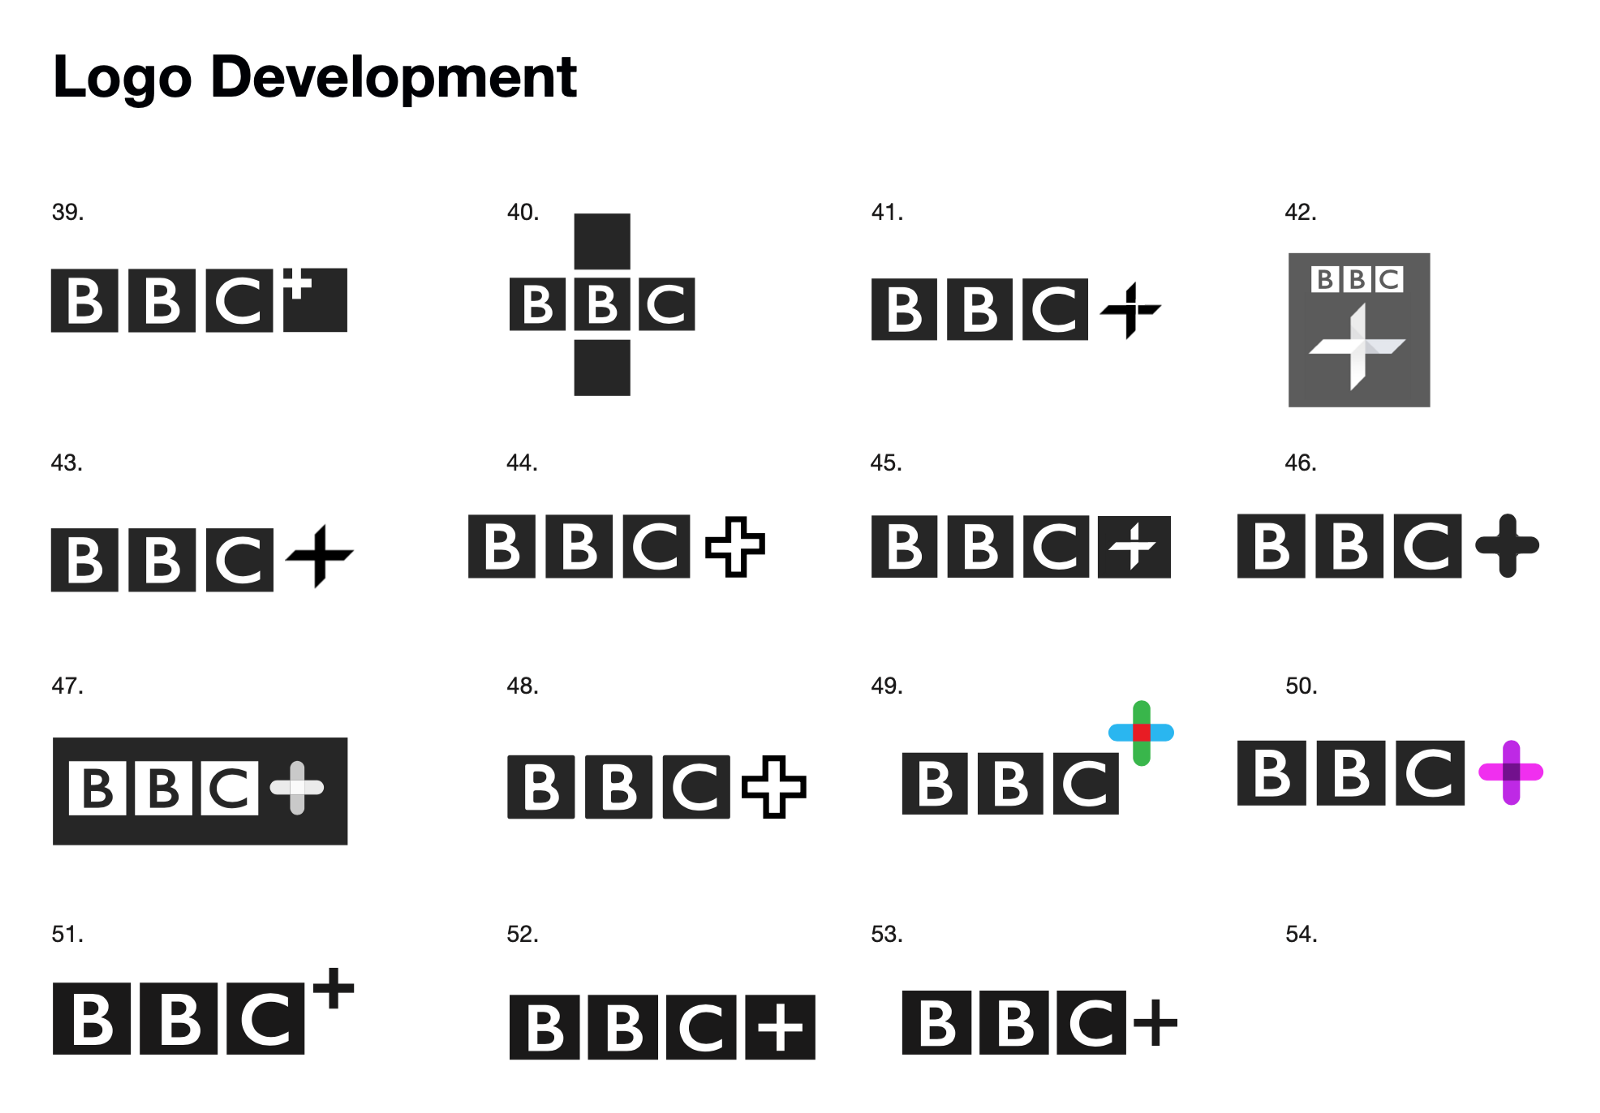 BBC+ logo concepts